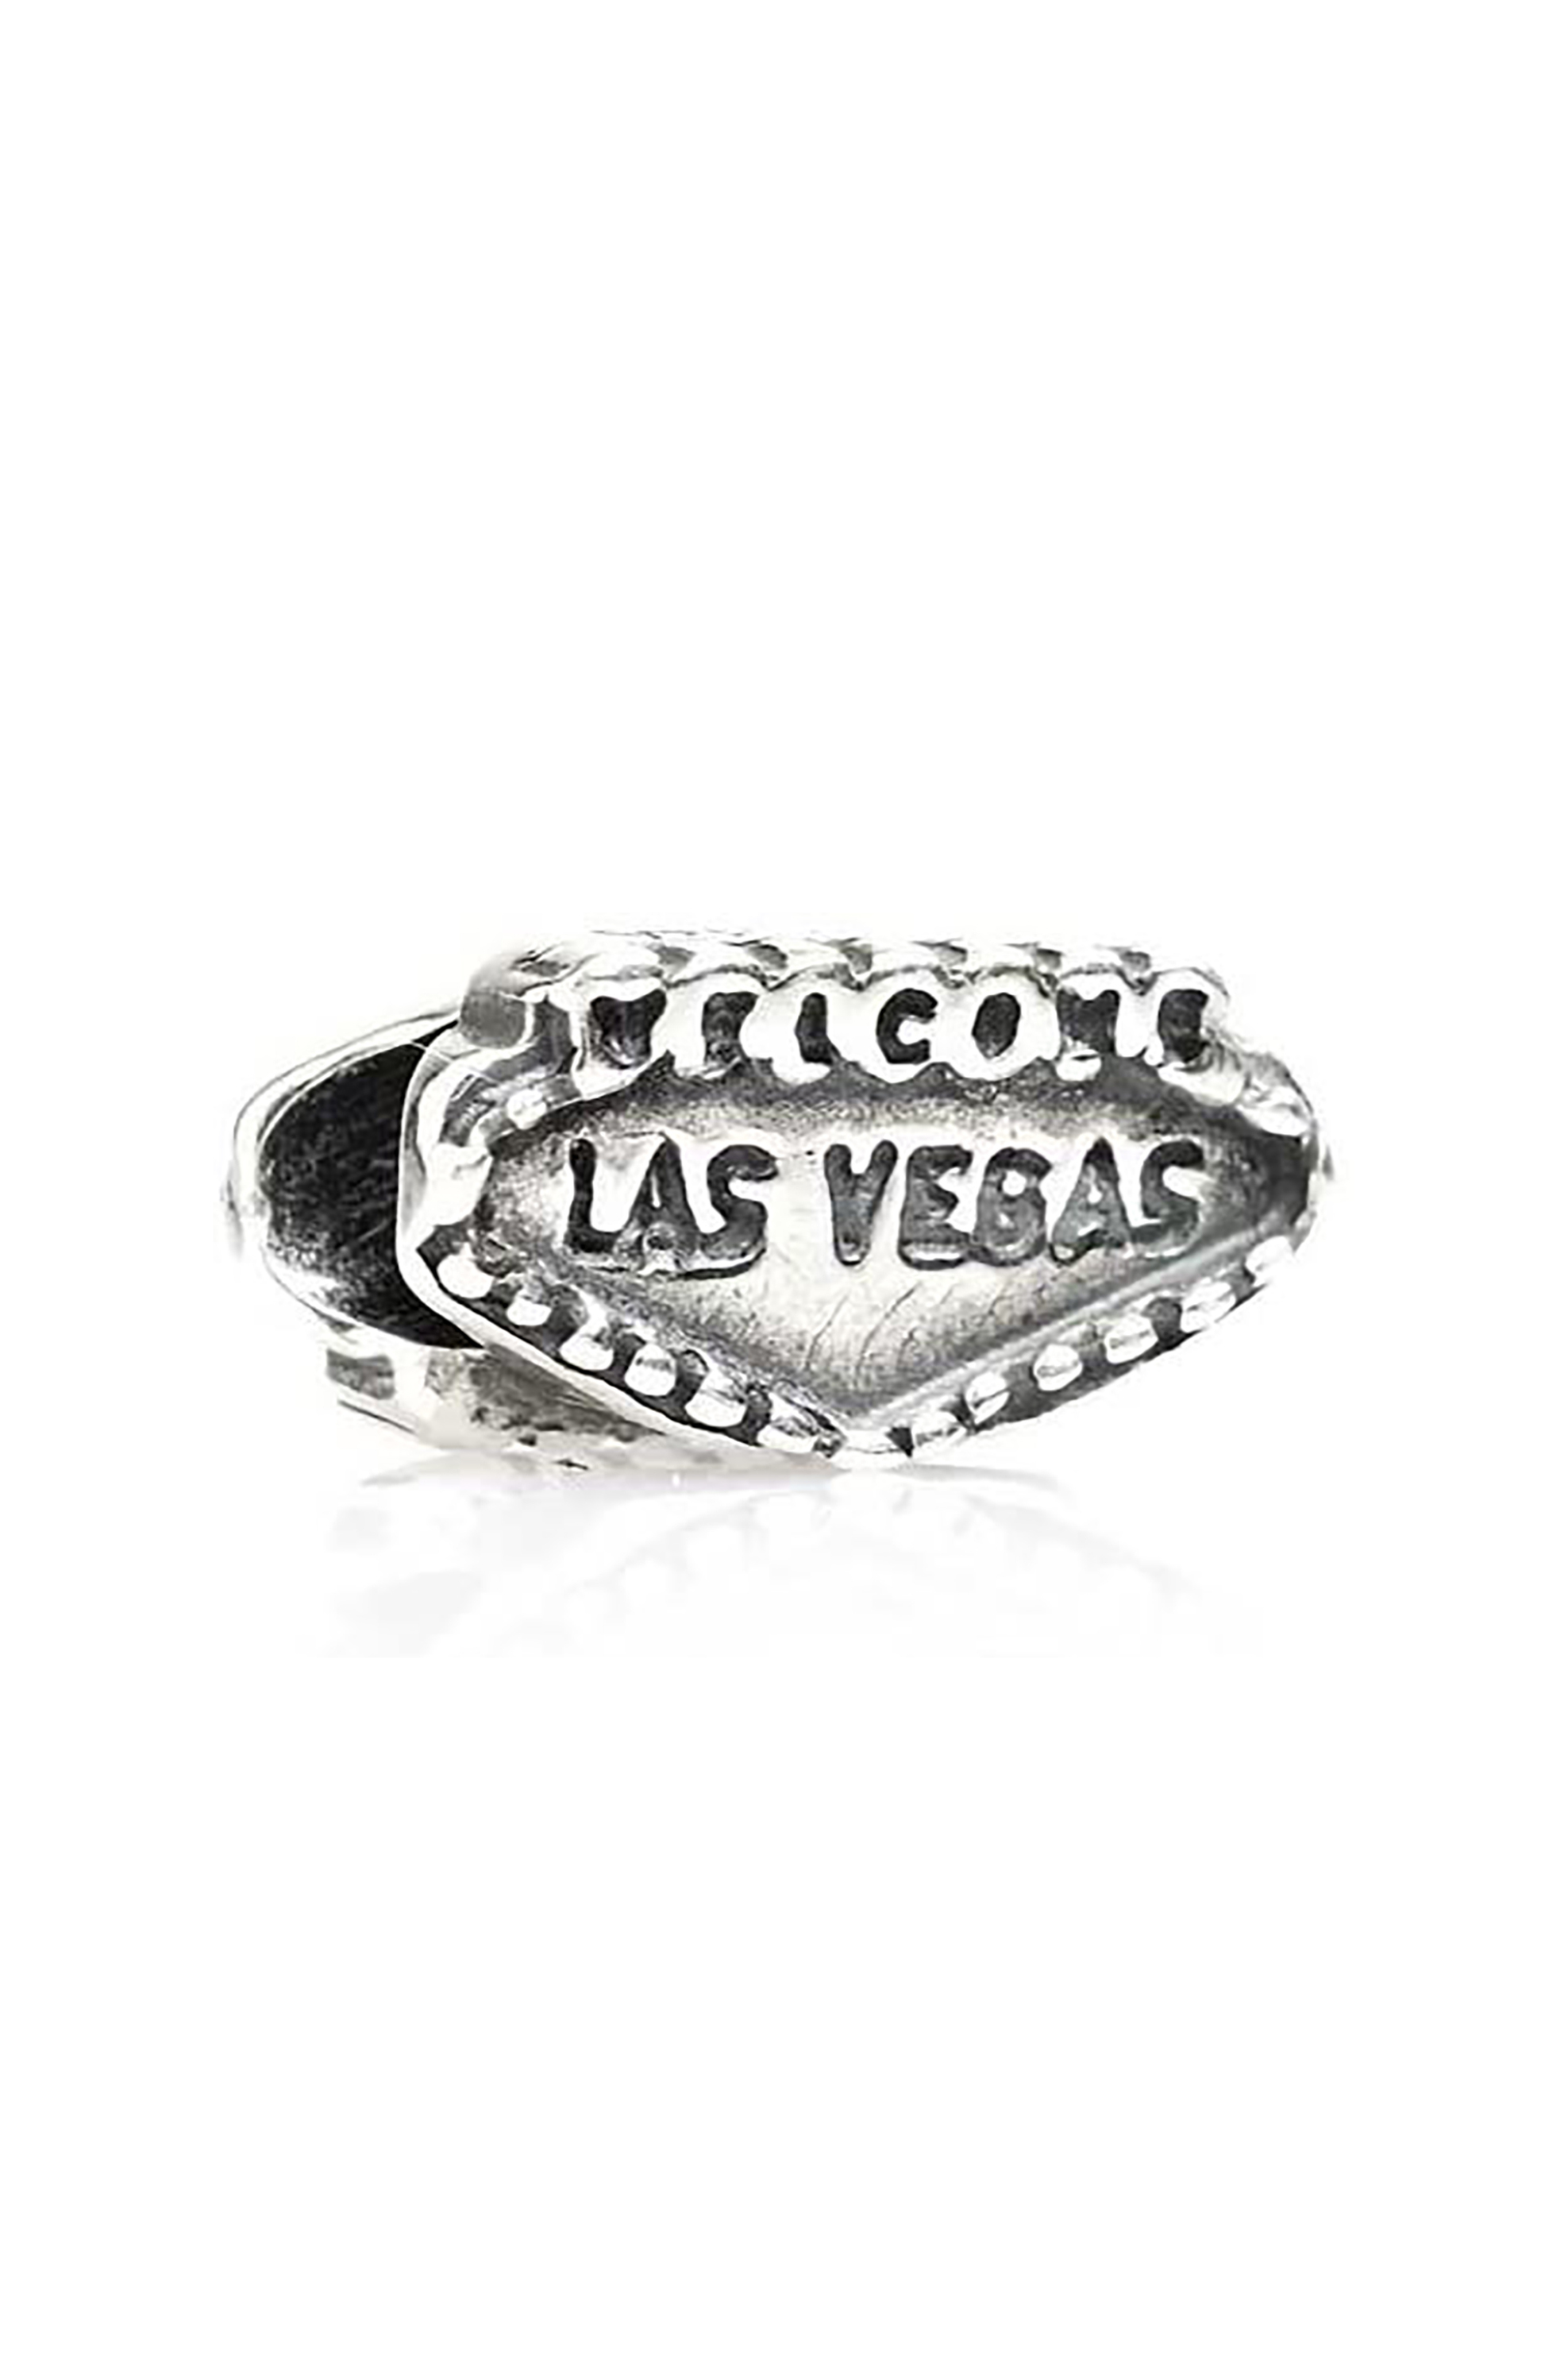 Γυναίκα > ΑΞΕΣΟΥΑΡ > Κοσμήματα > Charms Tedora ασημένιο charm Las Vegas - BEBV365